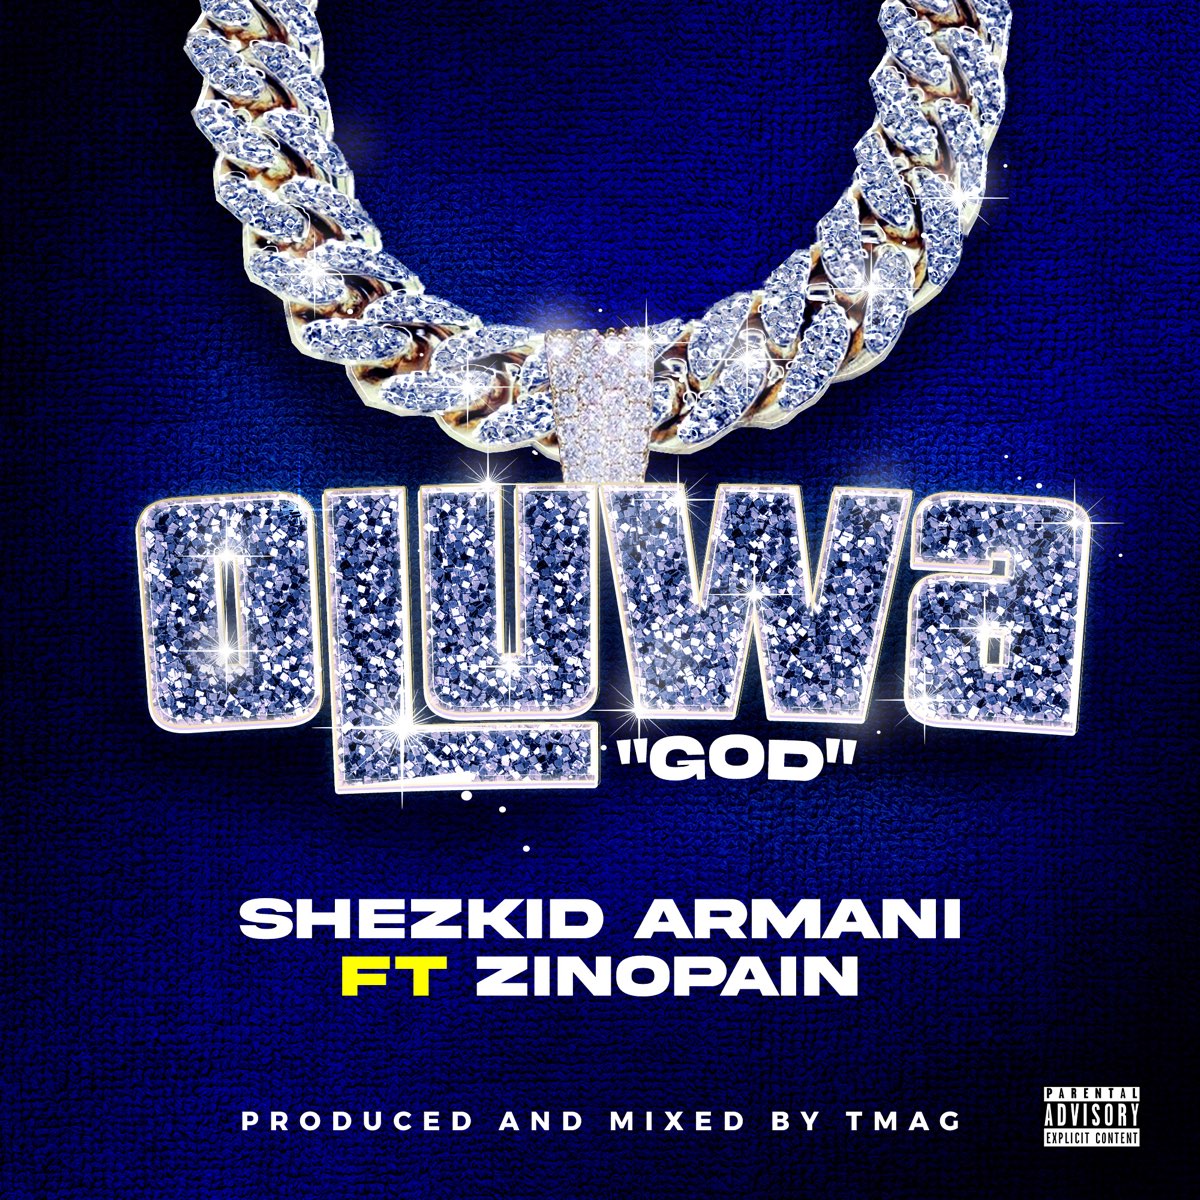 Oluwa God (feat. Zinopain) - Single - Album by Shezkid Armani - Apple Music